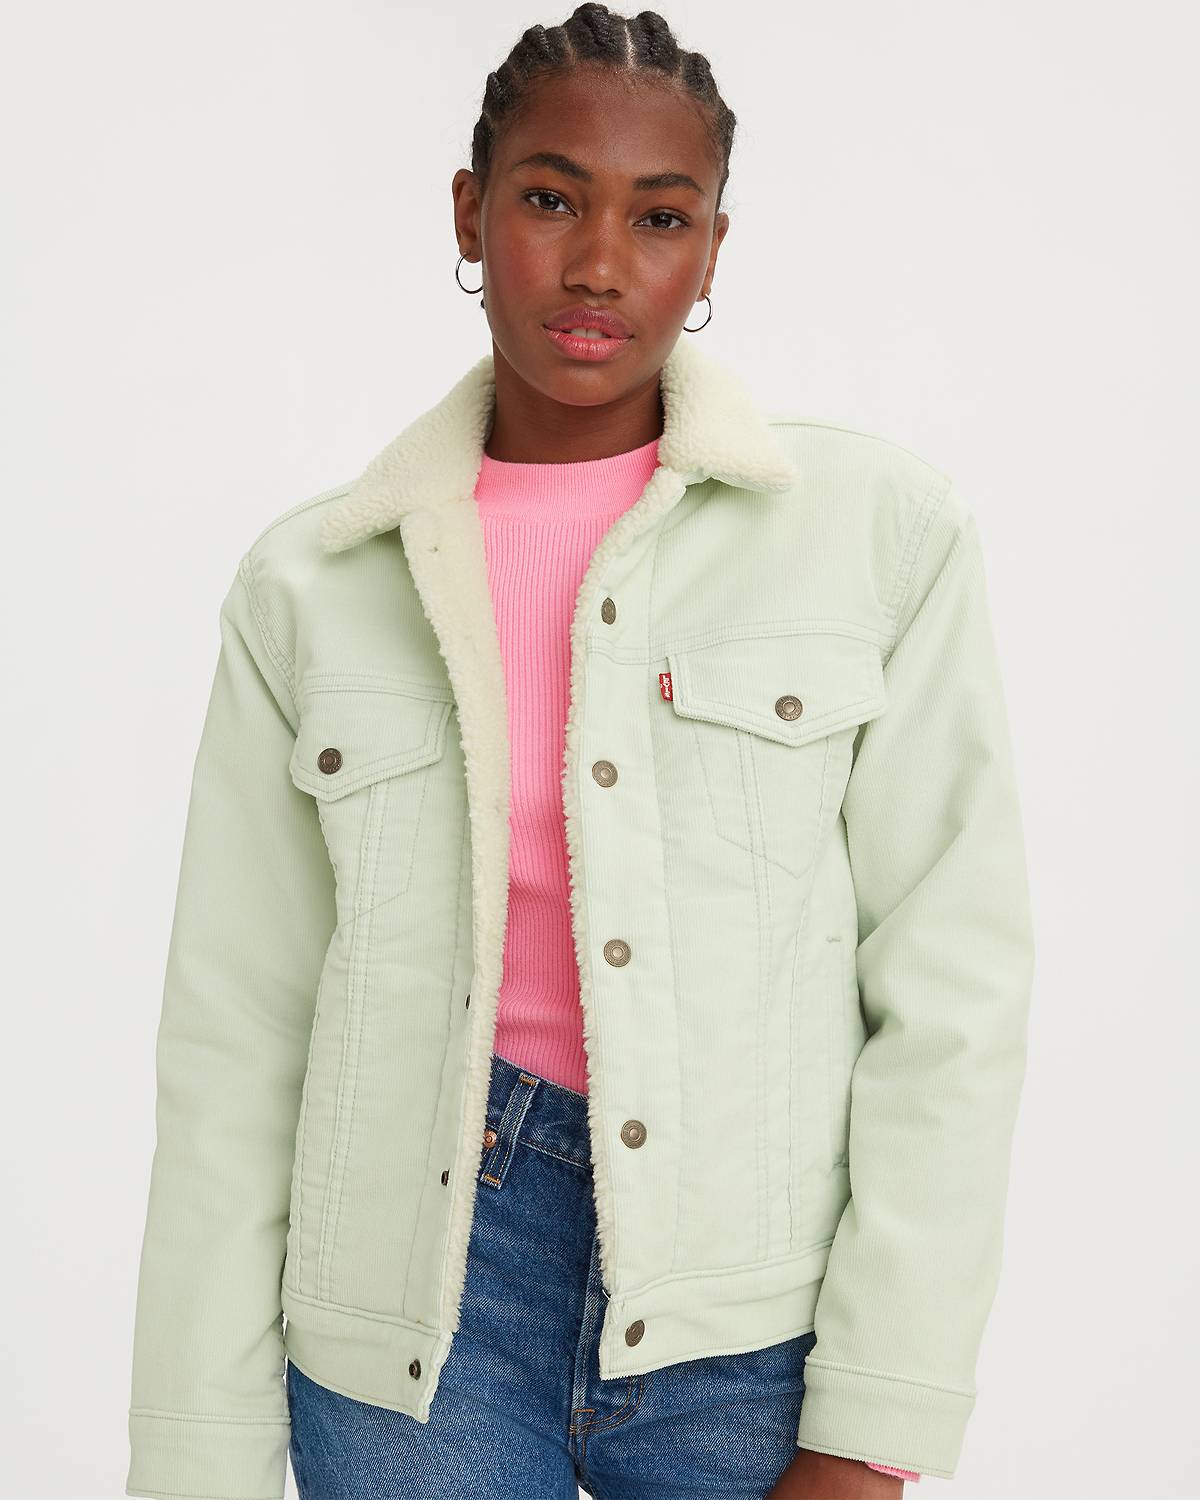 Model wearing mint green sherpa trucker jacket